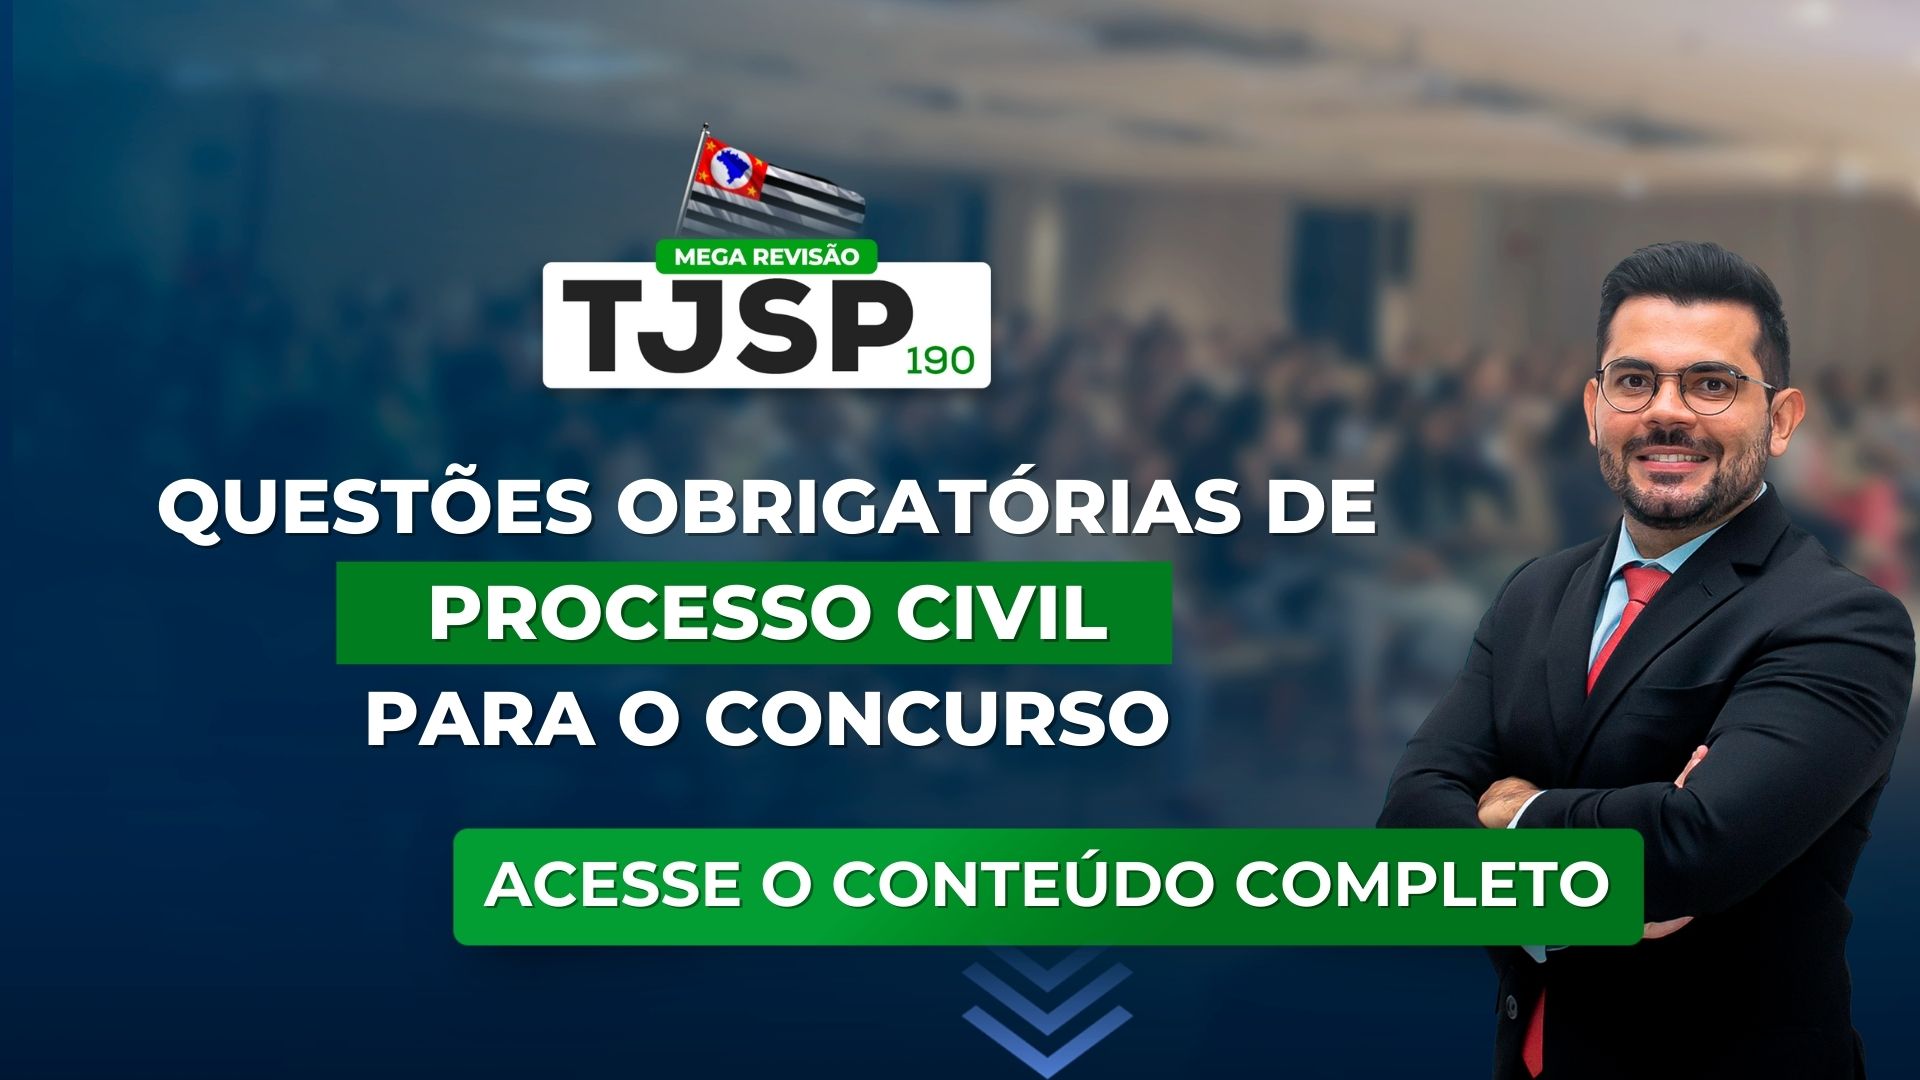 TJSP 190 Questões obrigatórias de Processo Civil para o concurso